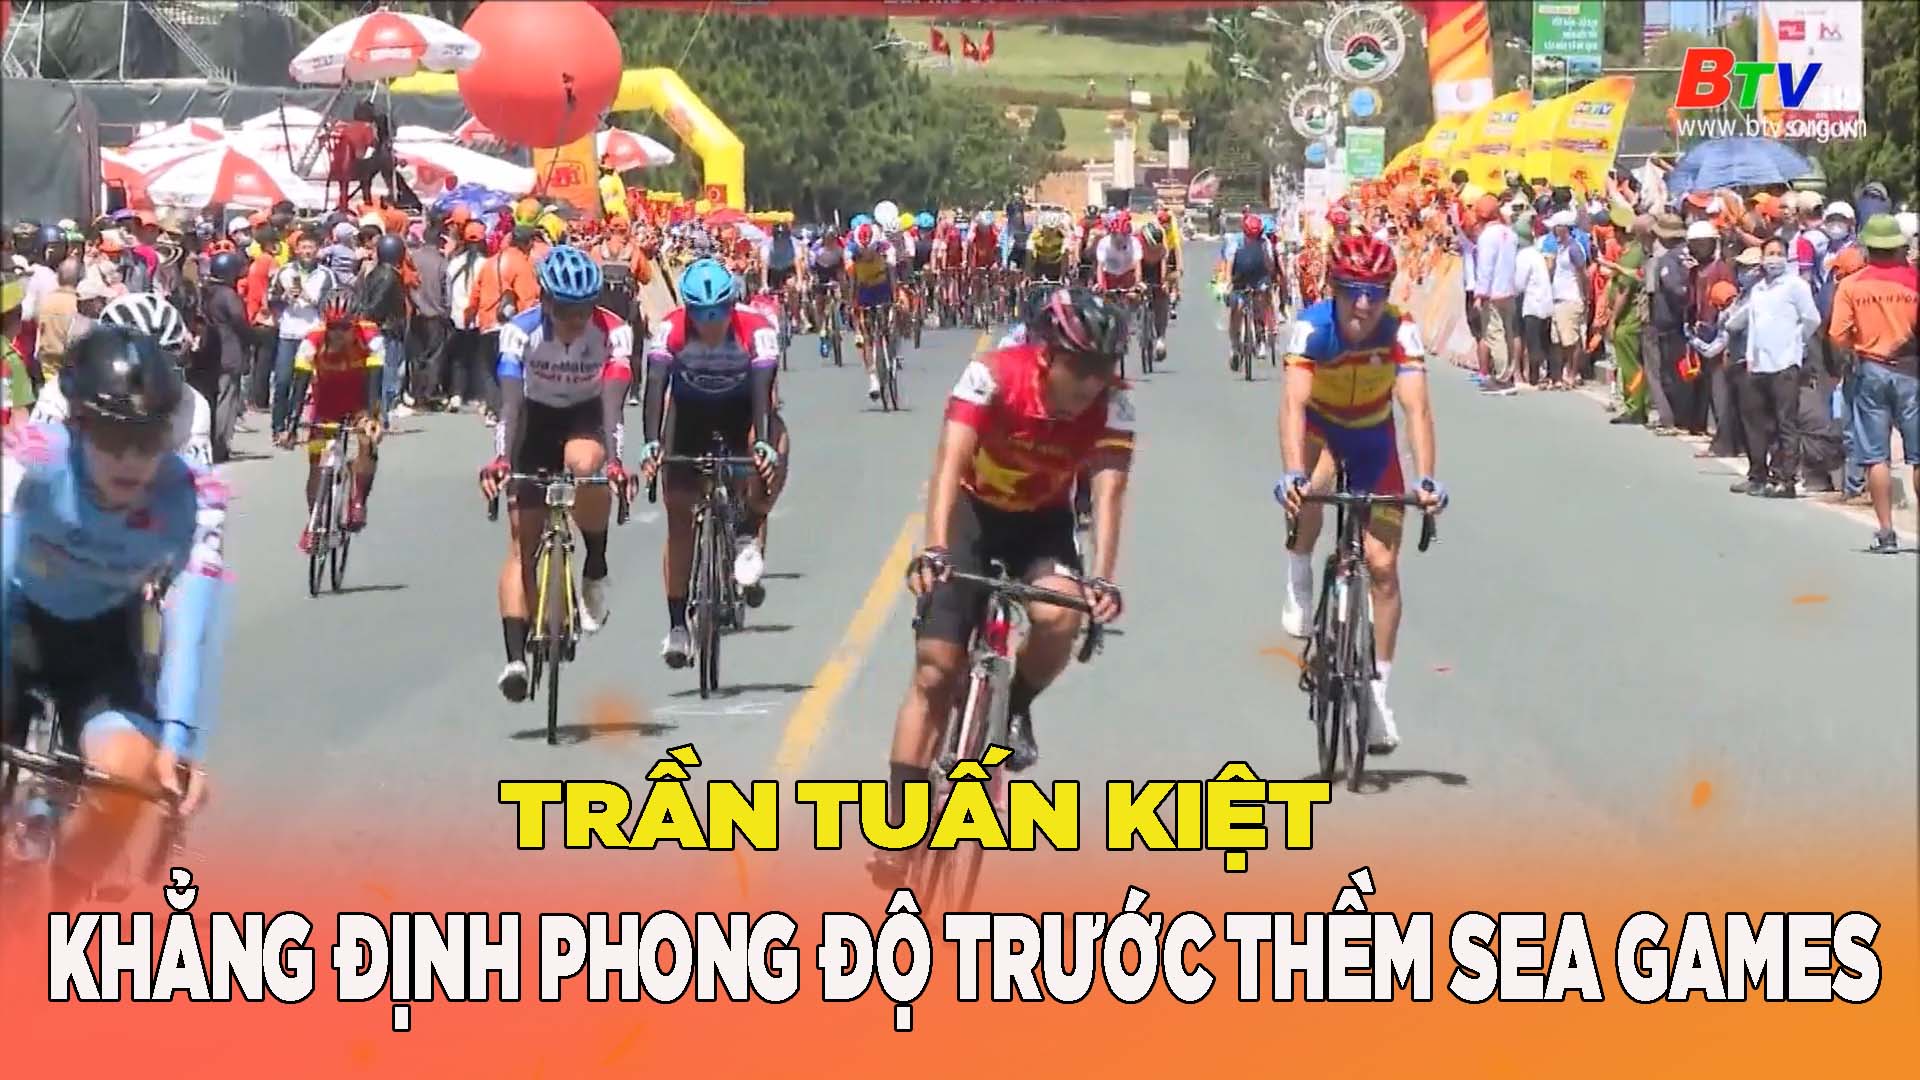 Giải xe đạp Cúp Truyền hình TP.HCM – Trần Tuần Kiệt khẳng định phong độ trước thềm SEA Games